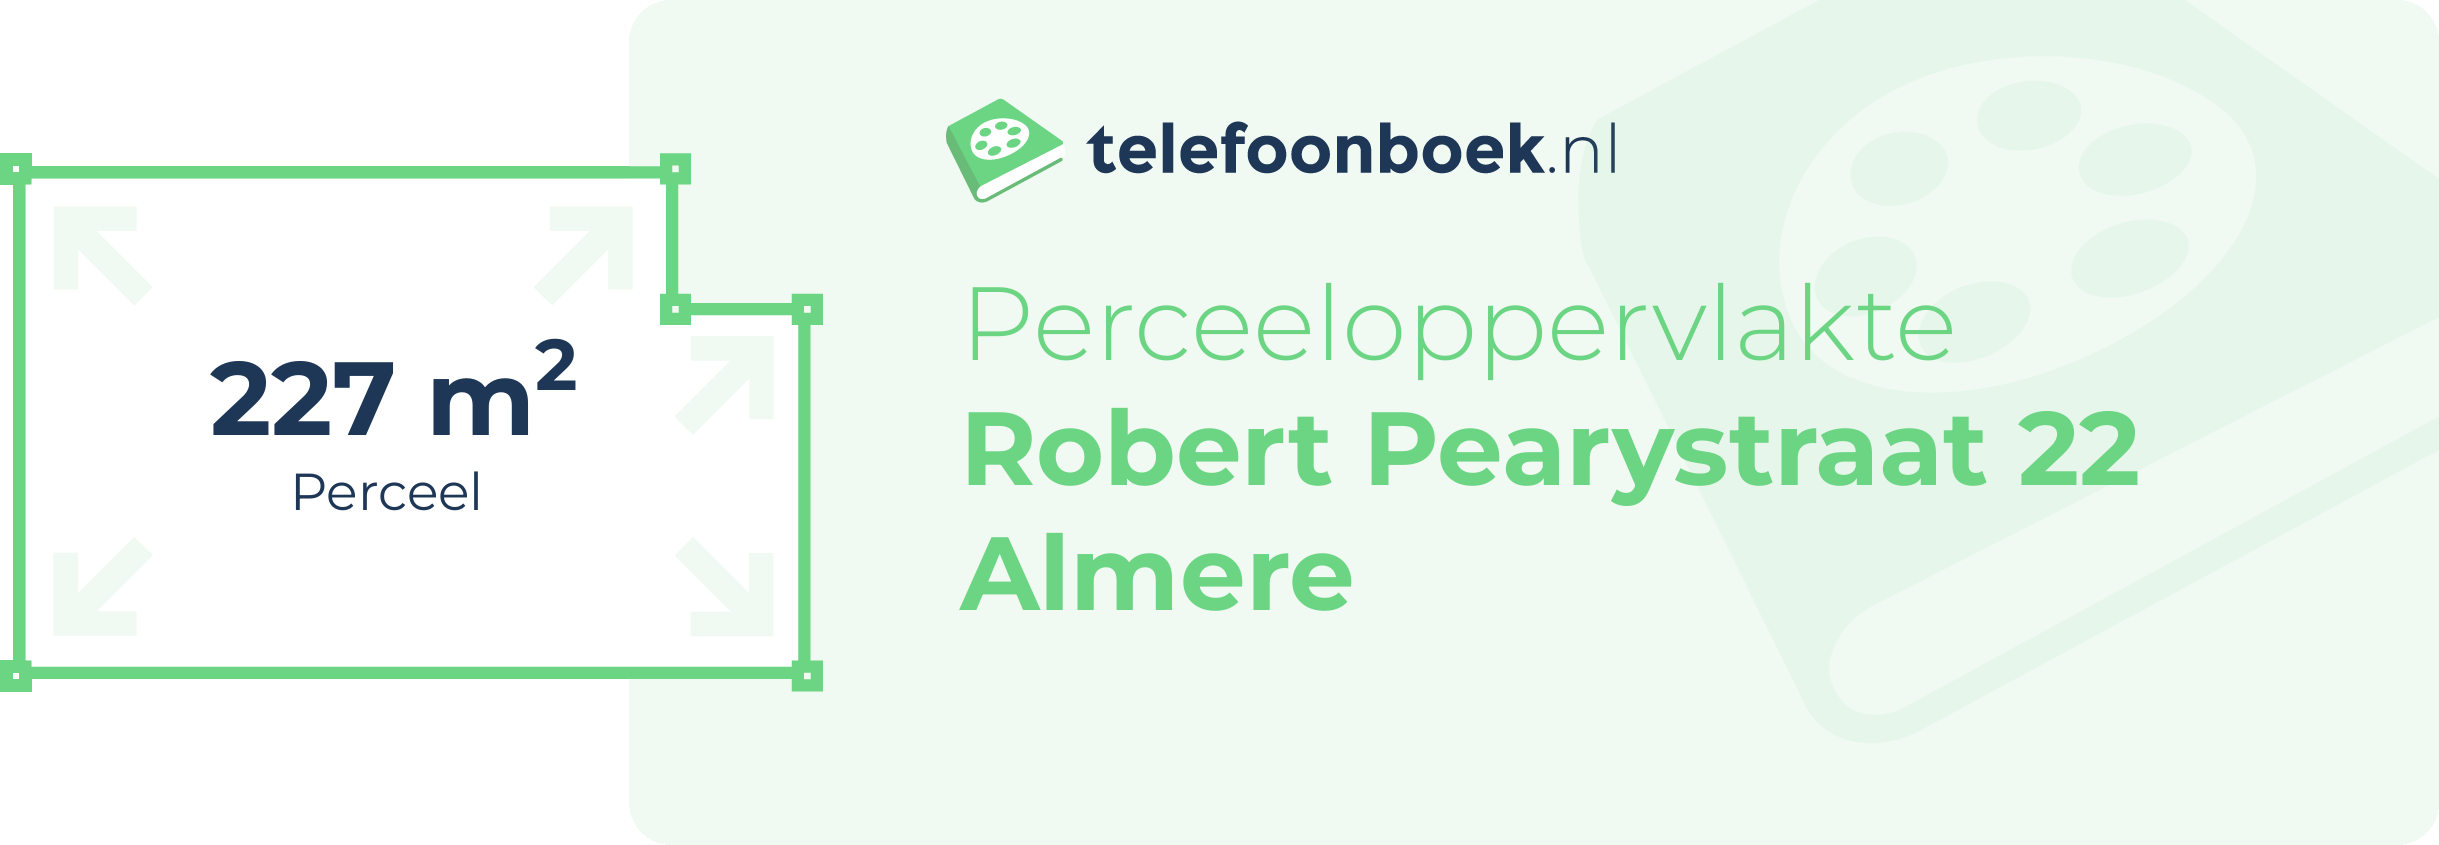 Perceeloppervlakte Robert Pearystraat 22 Almere